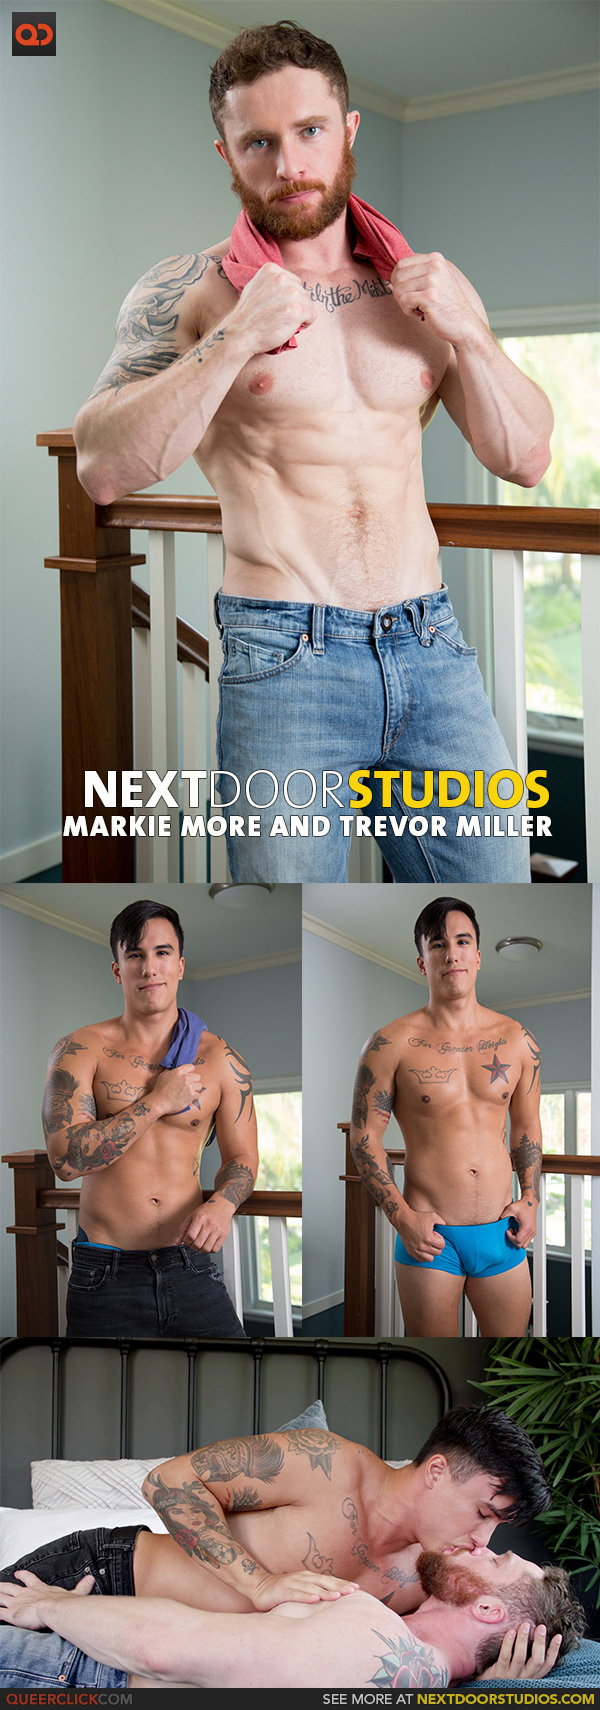 Next Door Studios:  Markie More and Trevor Miller